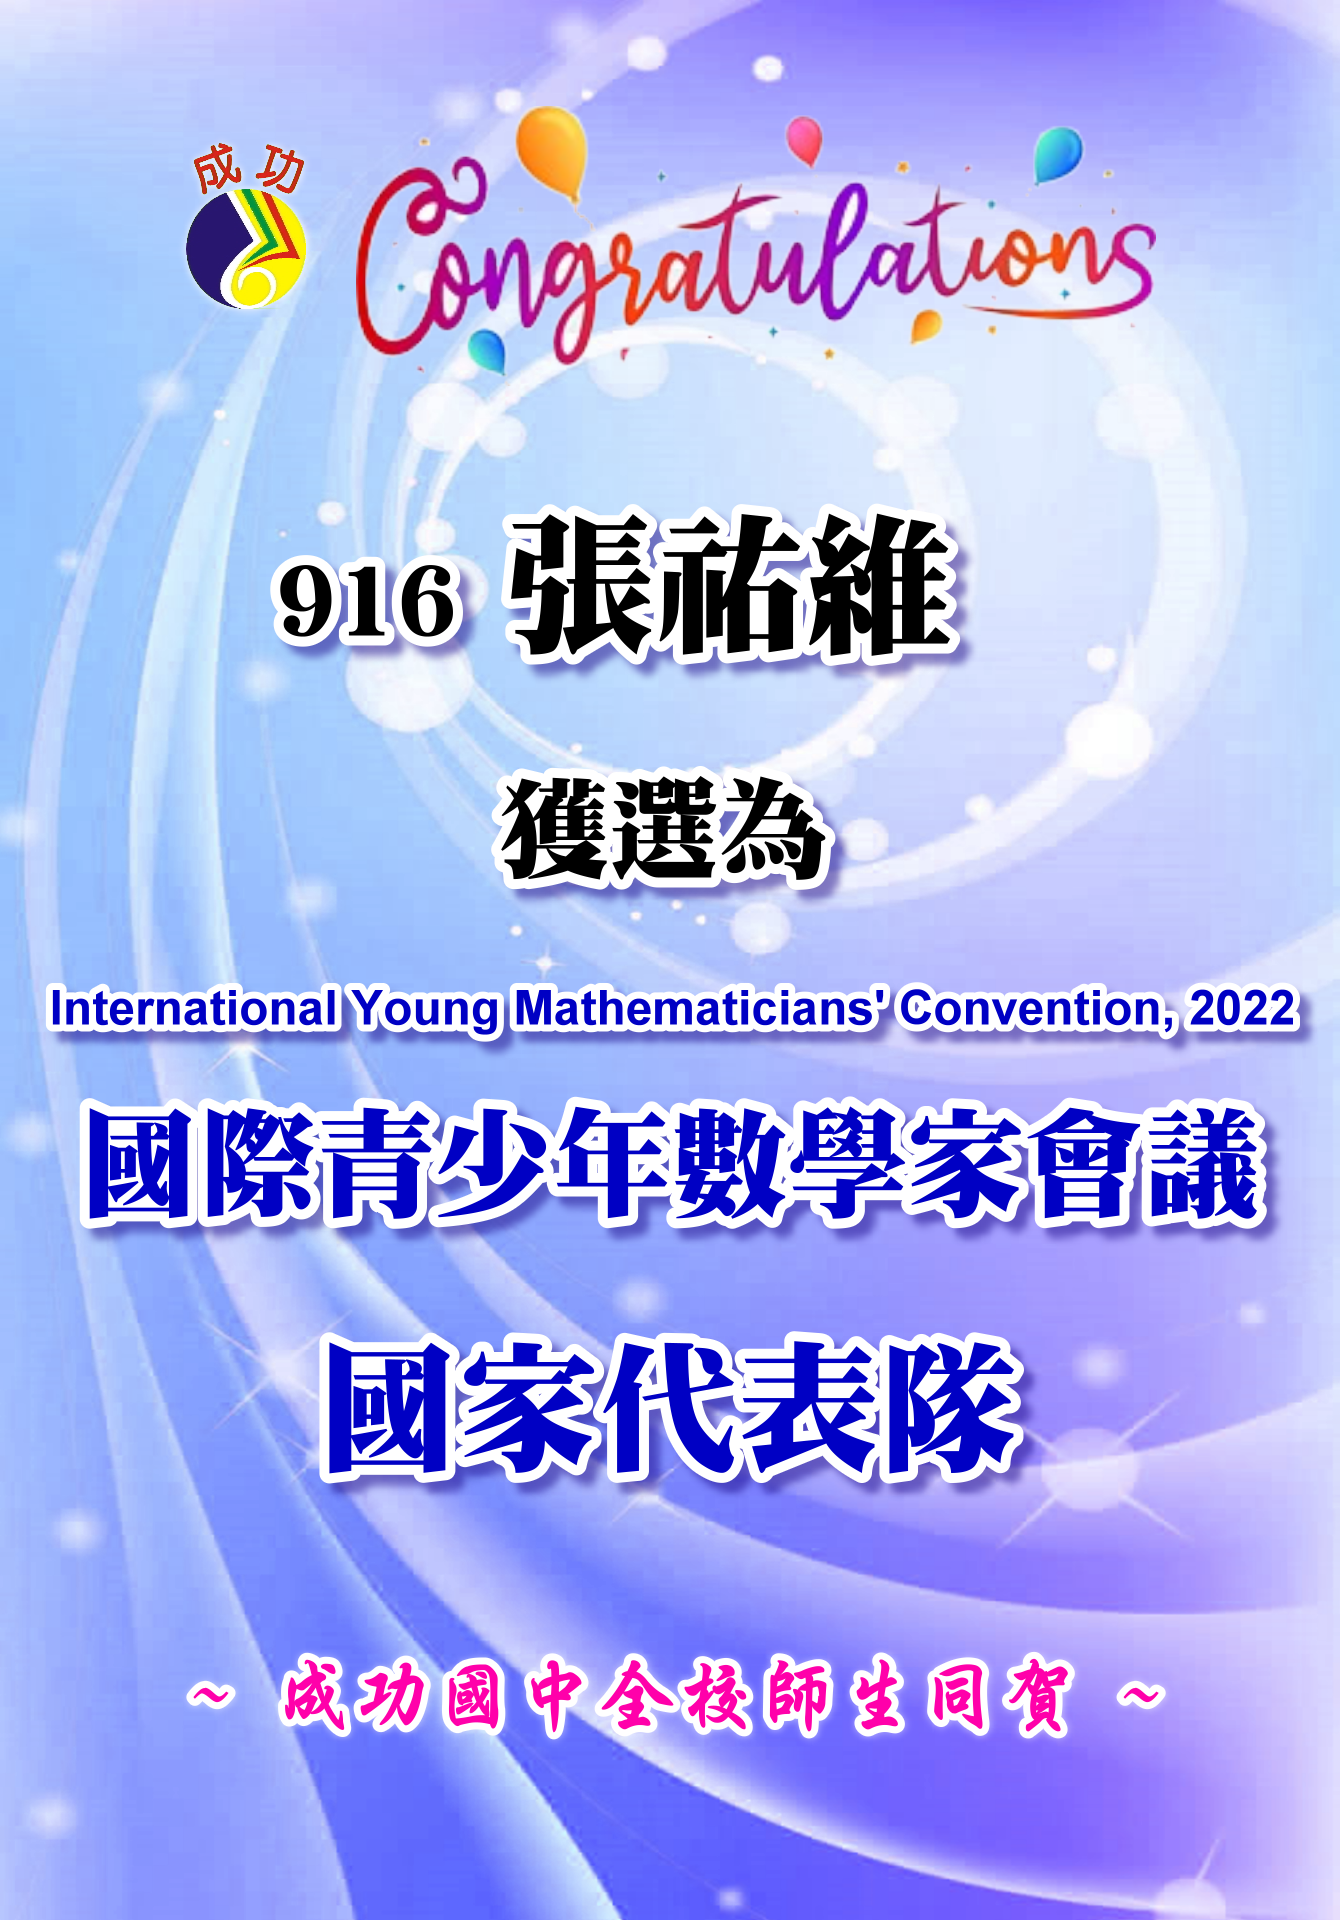 916張祐維獲選為國際青少年數學家會議國家代表隊